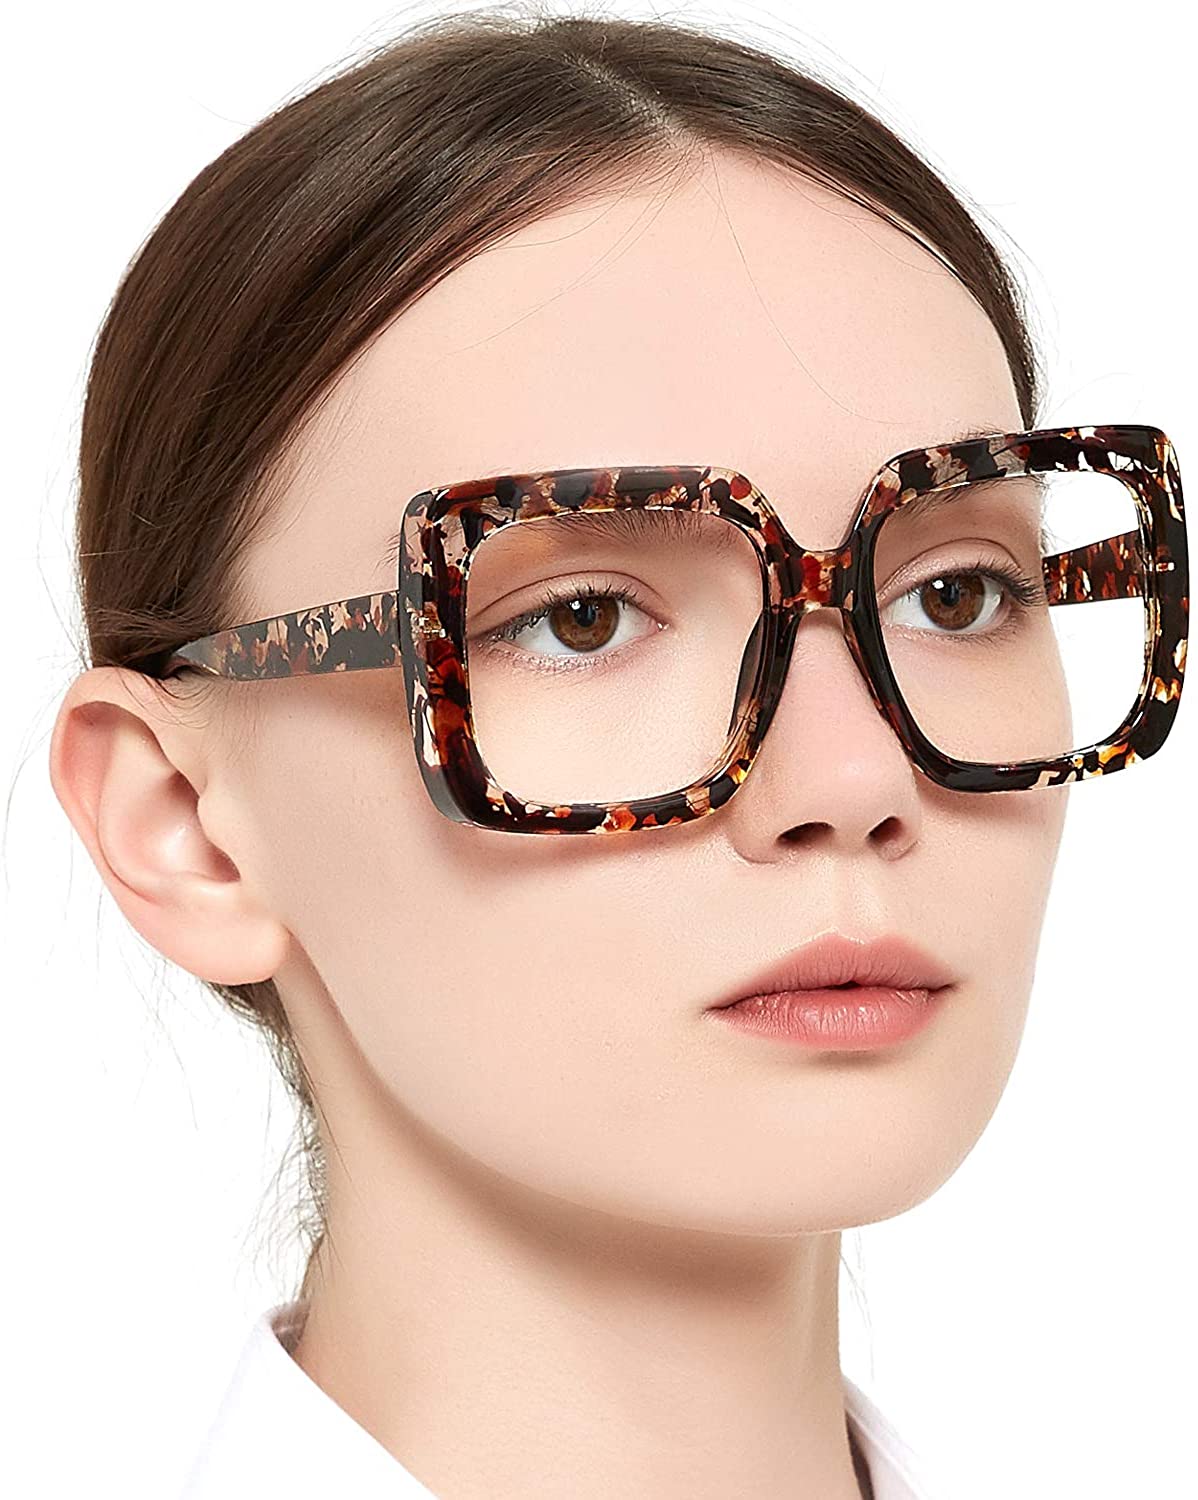 OCCI Chiari Bifocal Sunglasses Reading Glasses for Women Large Reader 1.0 1.5 2.0 2.5 3.0 3.5 UV400 Blue Light Filter, Demi / 1.0